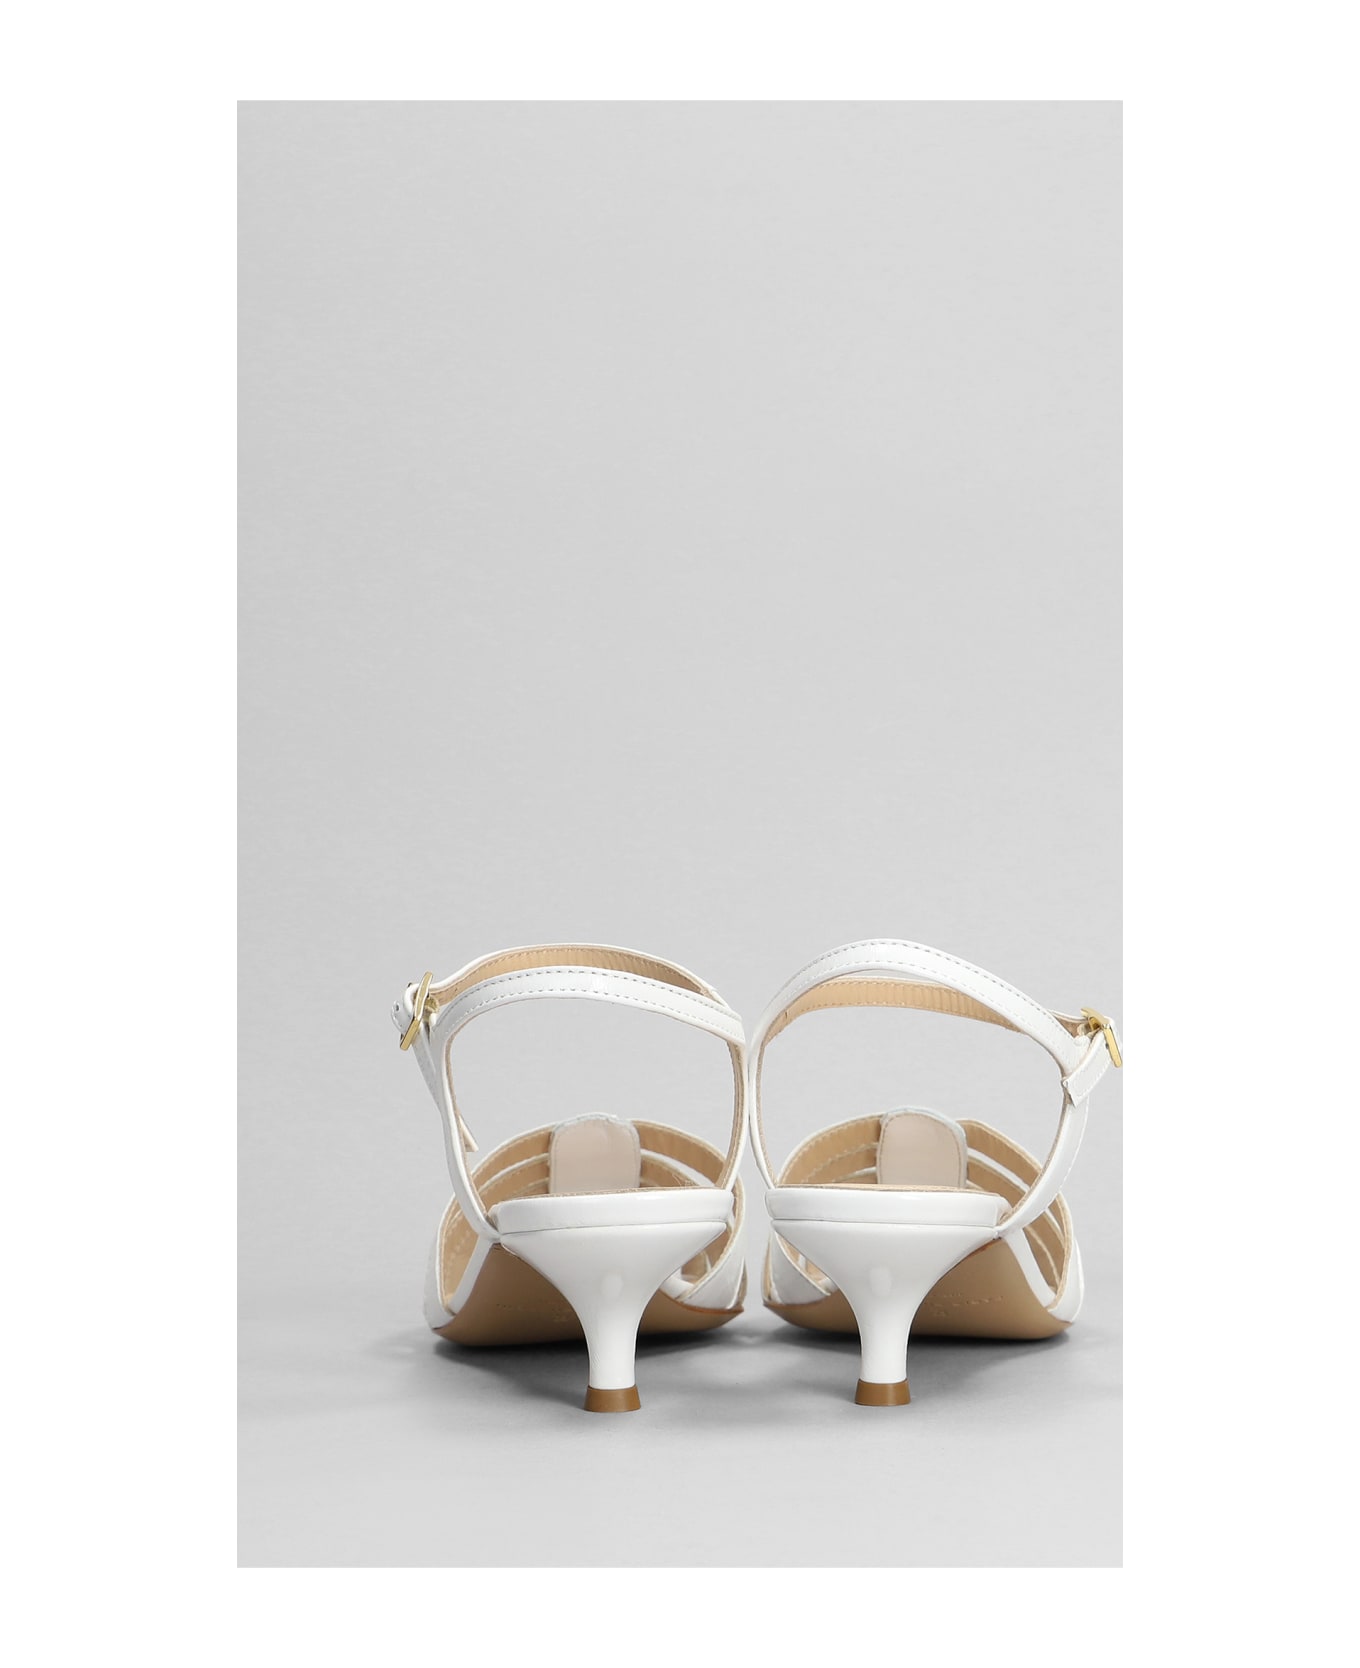 Fabio Rusconi Sandals In White Leather - white